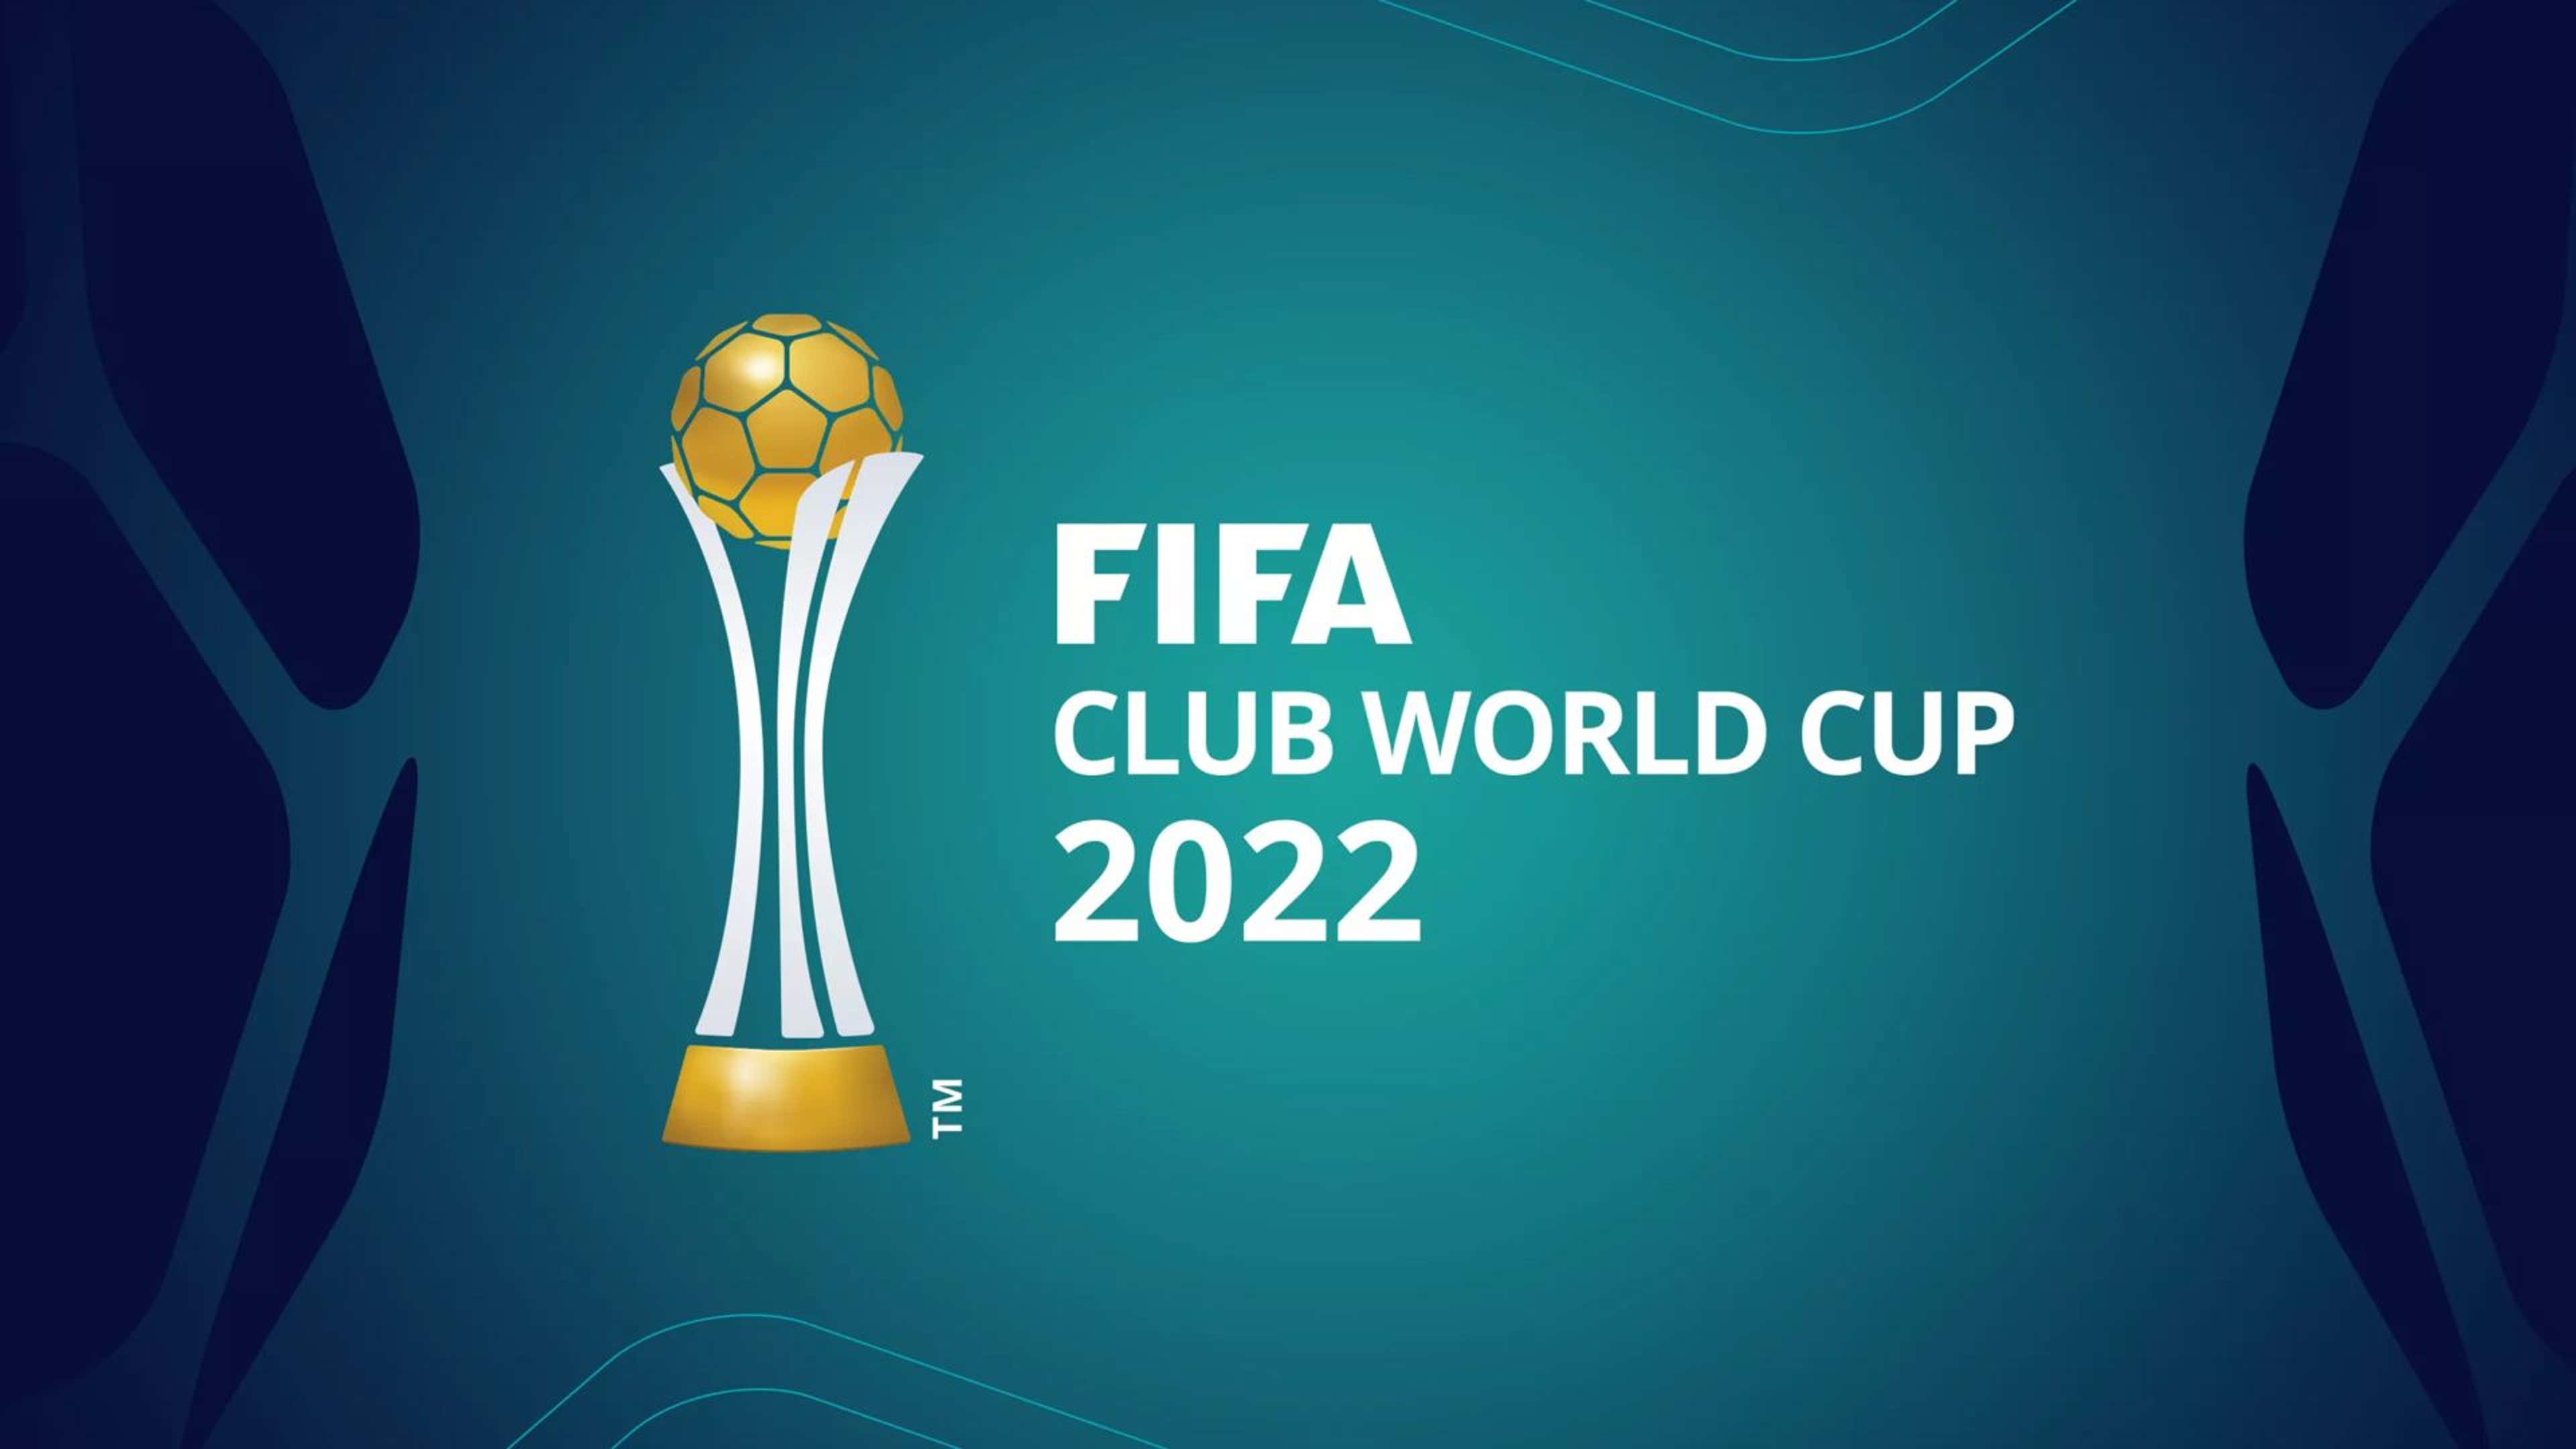 Os maiores vencedores do Mundial de Clubes - FIFA